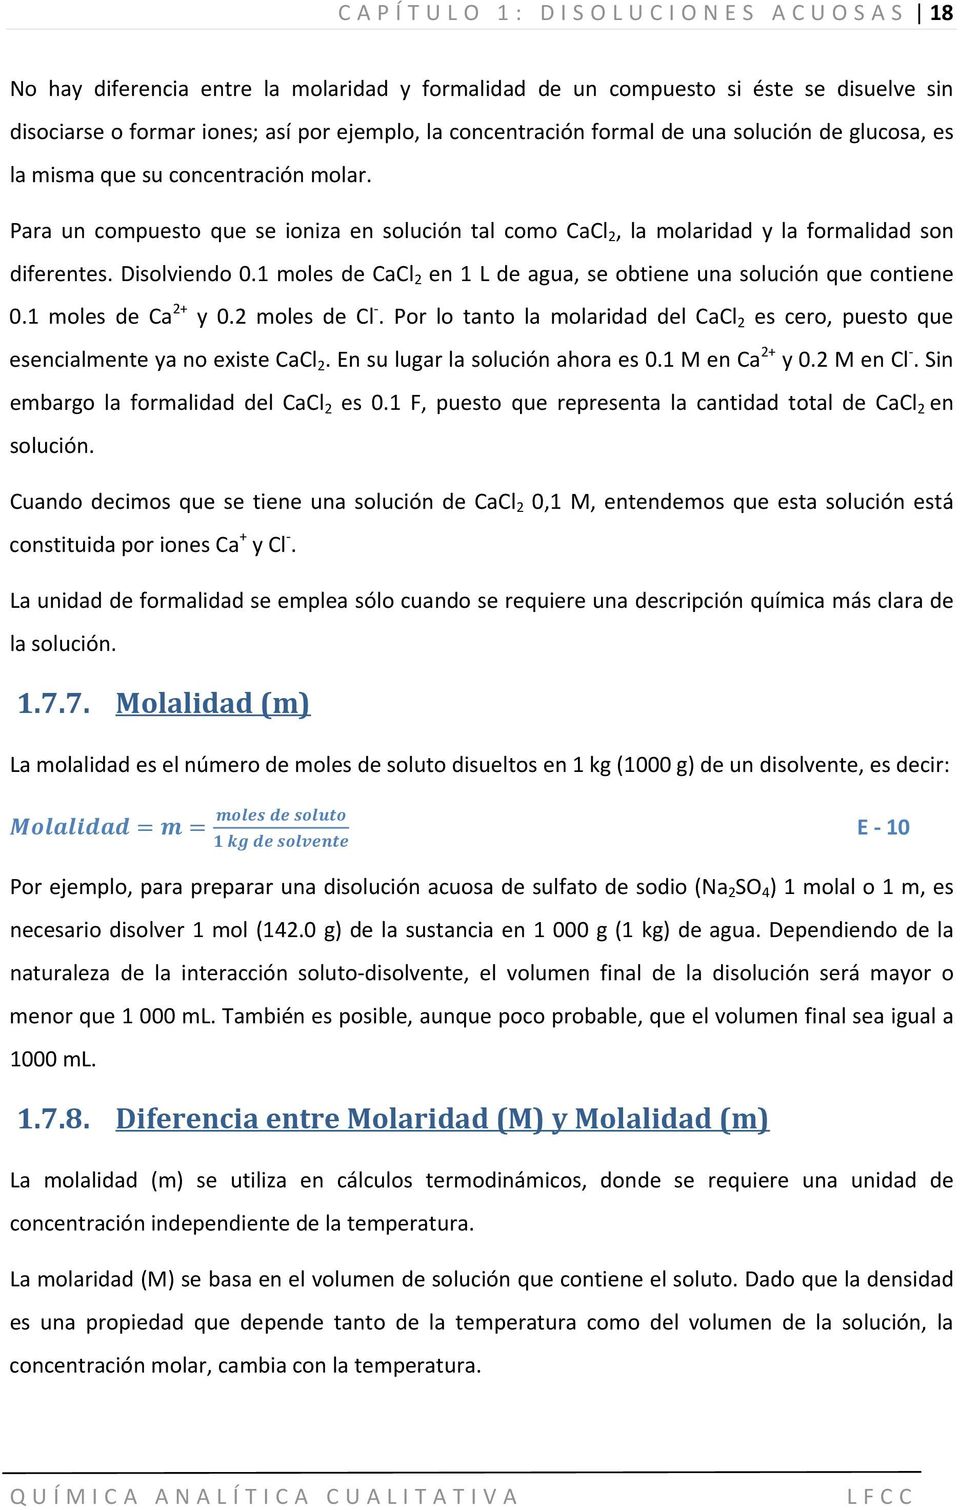 1 moles de CaCl 2 en 1 L de agua, se obtiene una solución que contiene 0.1 moles de Ca 2+ y 0.2 moles de Cl. Por lo tanto la molaridad del CaCl 2 es cero, puesto que esencialmente ya no existe CaCl 2.